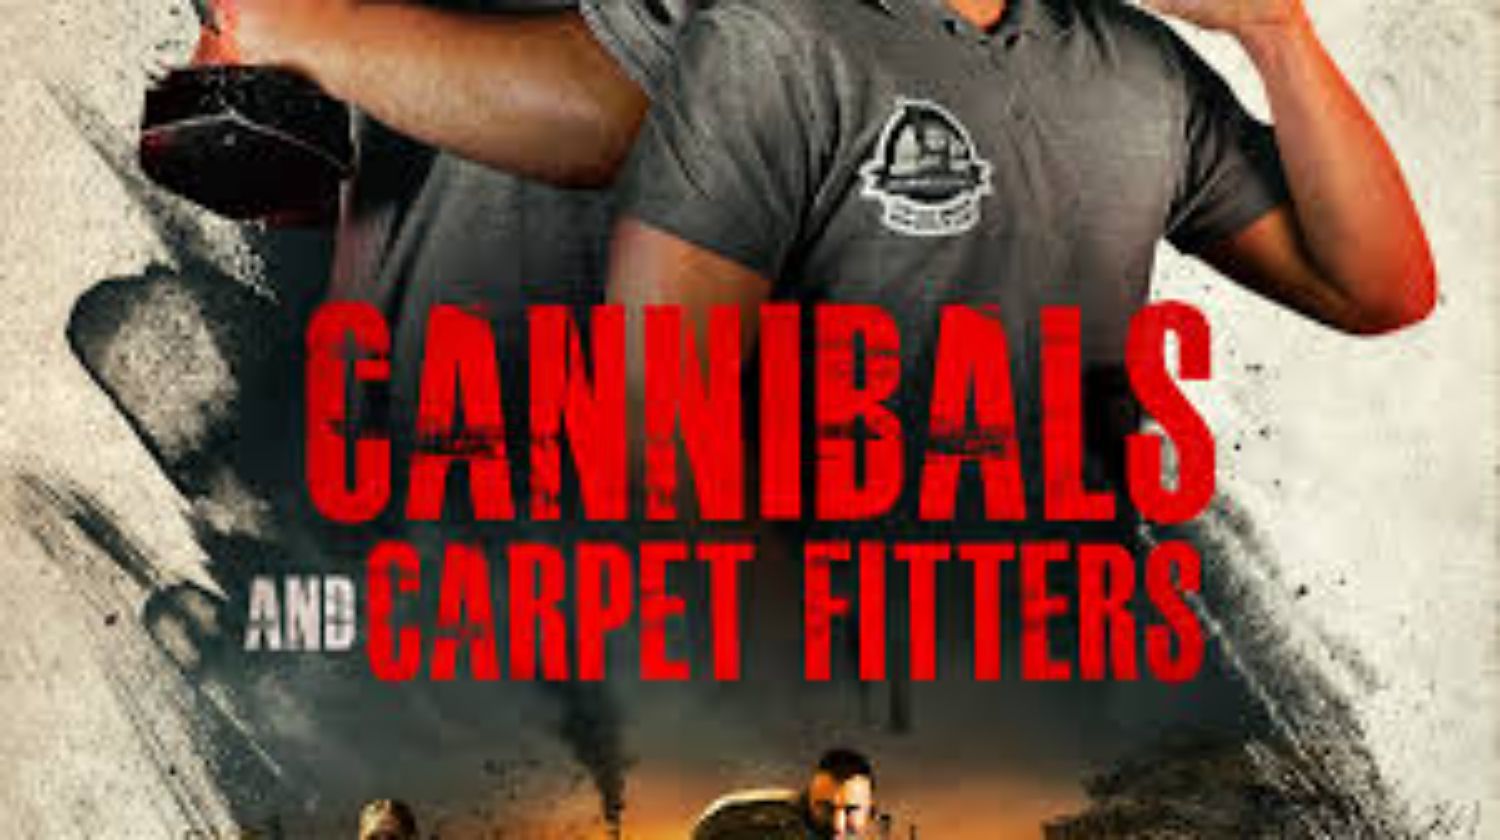 El cartel de caníbales y instaladores de alfombras 